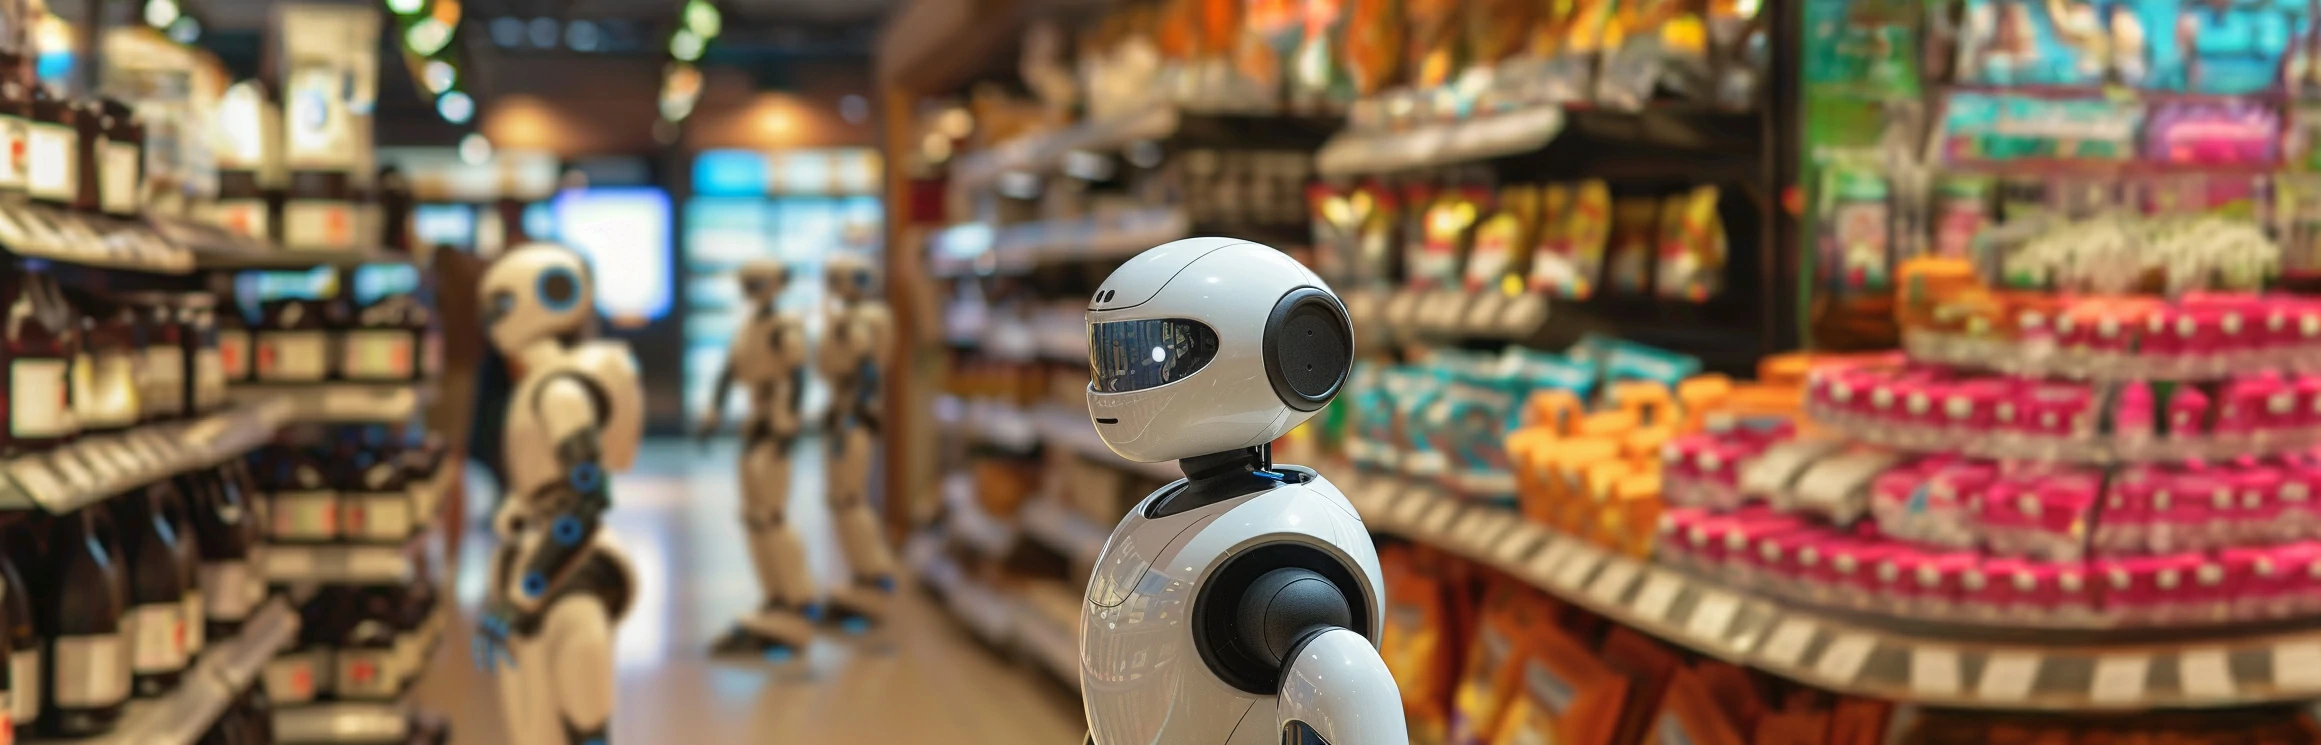 Automatización Robótica de Procesos RPA en el Comercio y Retail